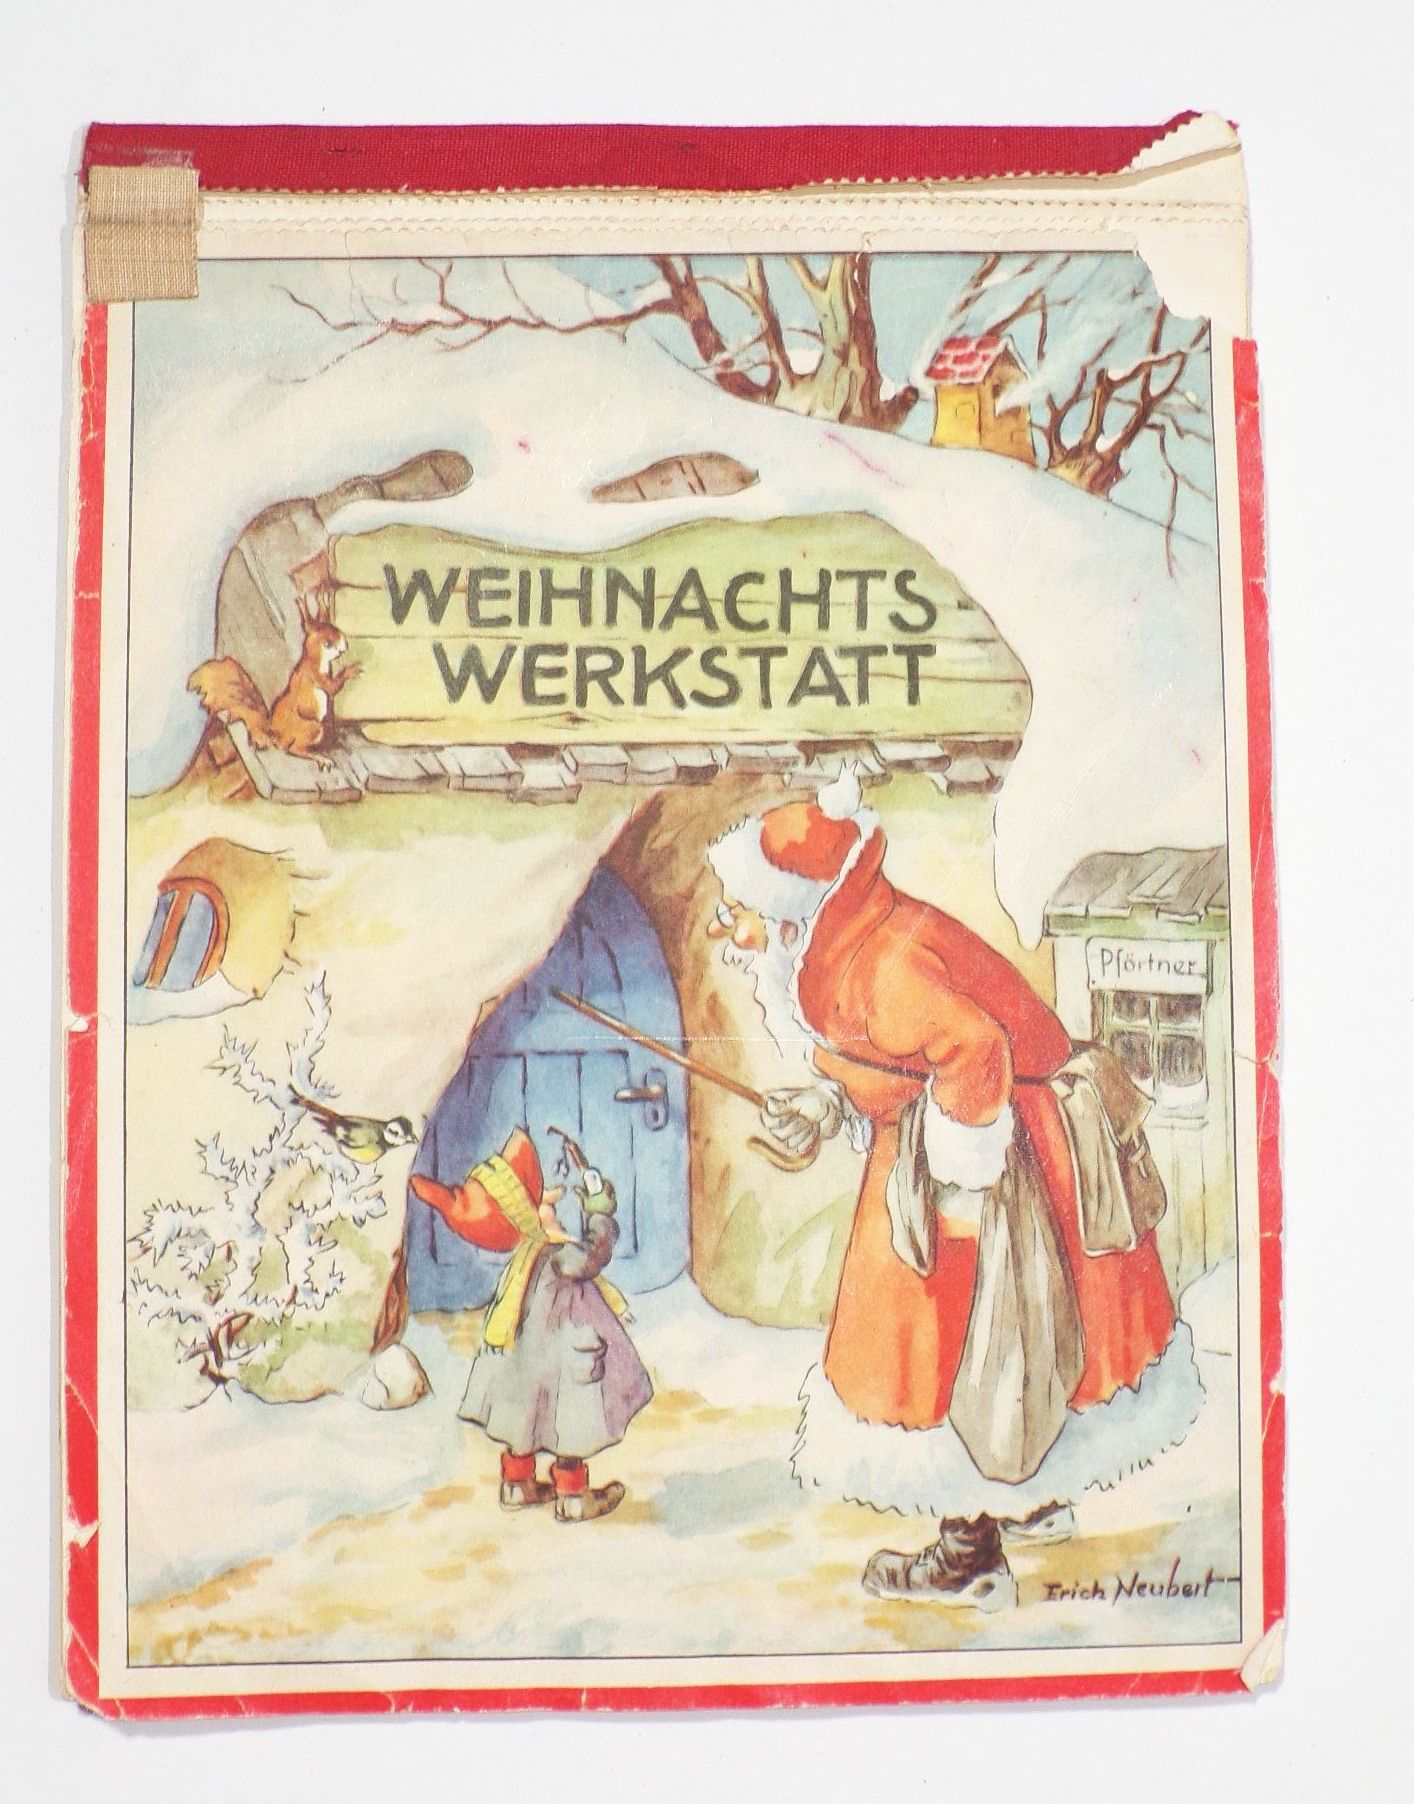 Weihnachts Werkstatt Adventskalender Erich Neubert Original 1950er Jahre